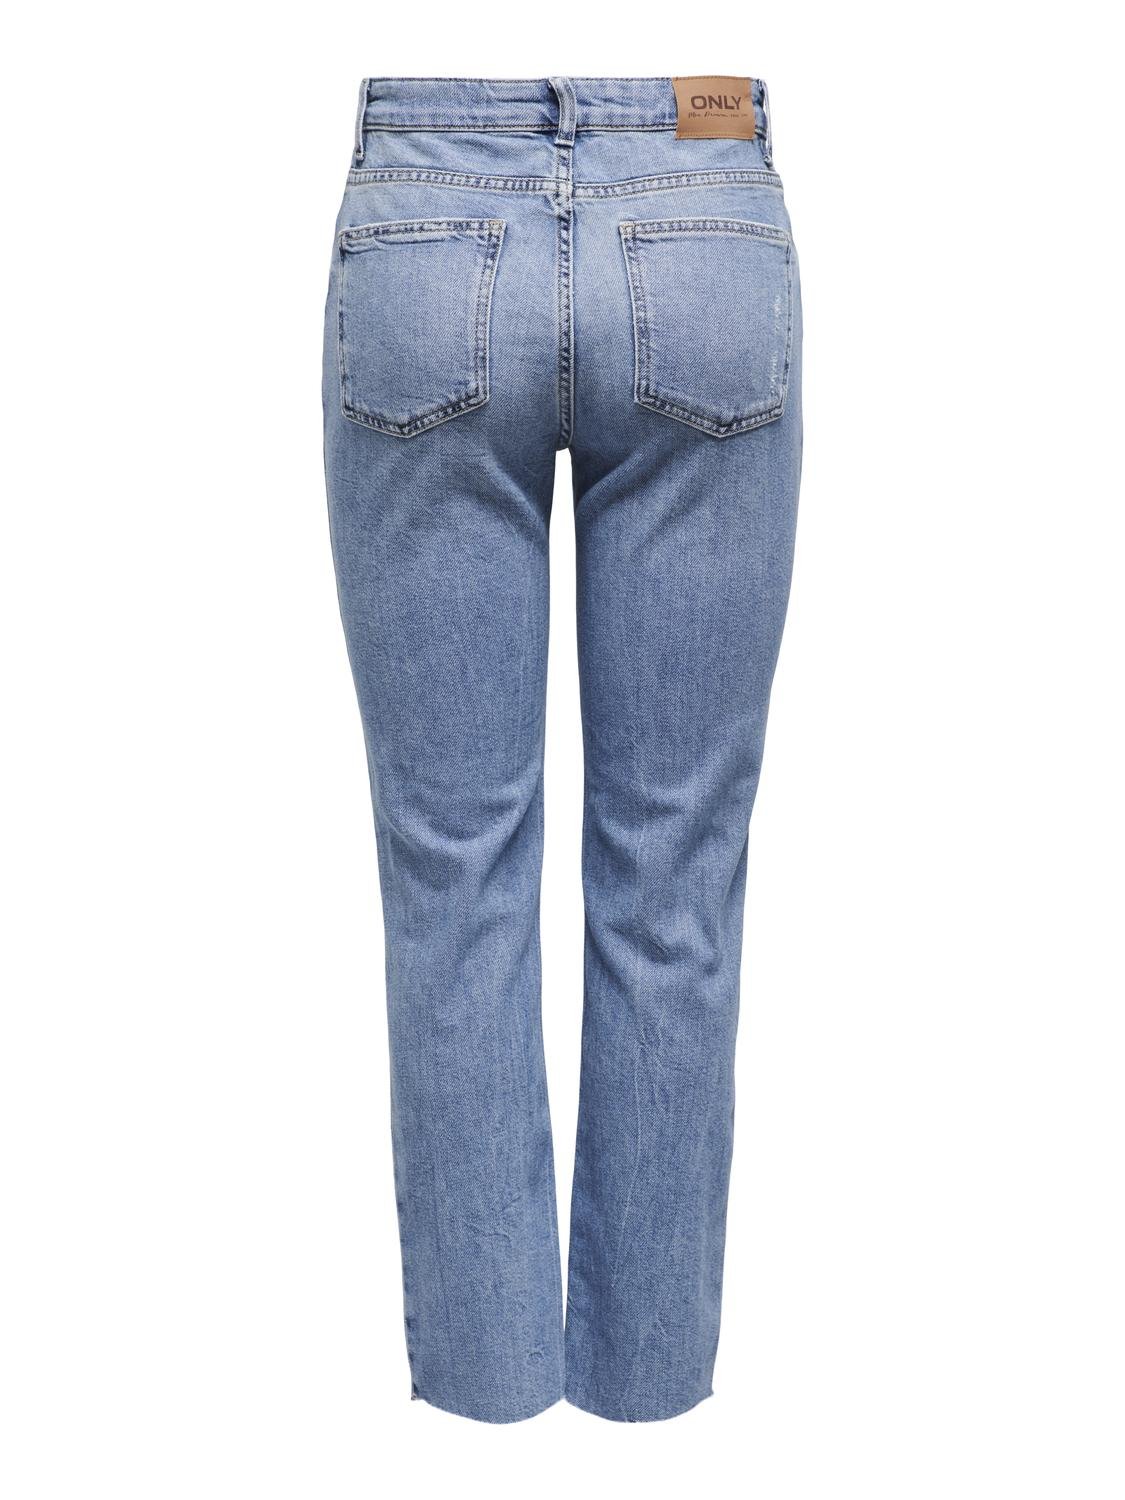 ONLY Straight Fit High waist Cut-off hems Jeans -Light Medium Blue Denim - 15248661